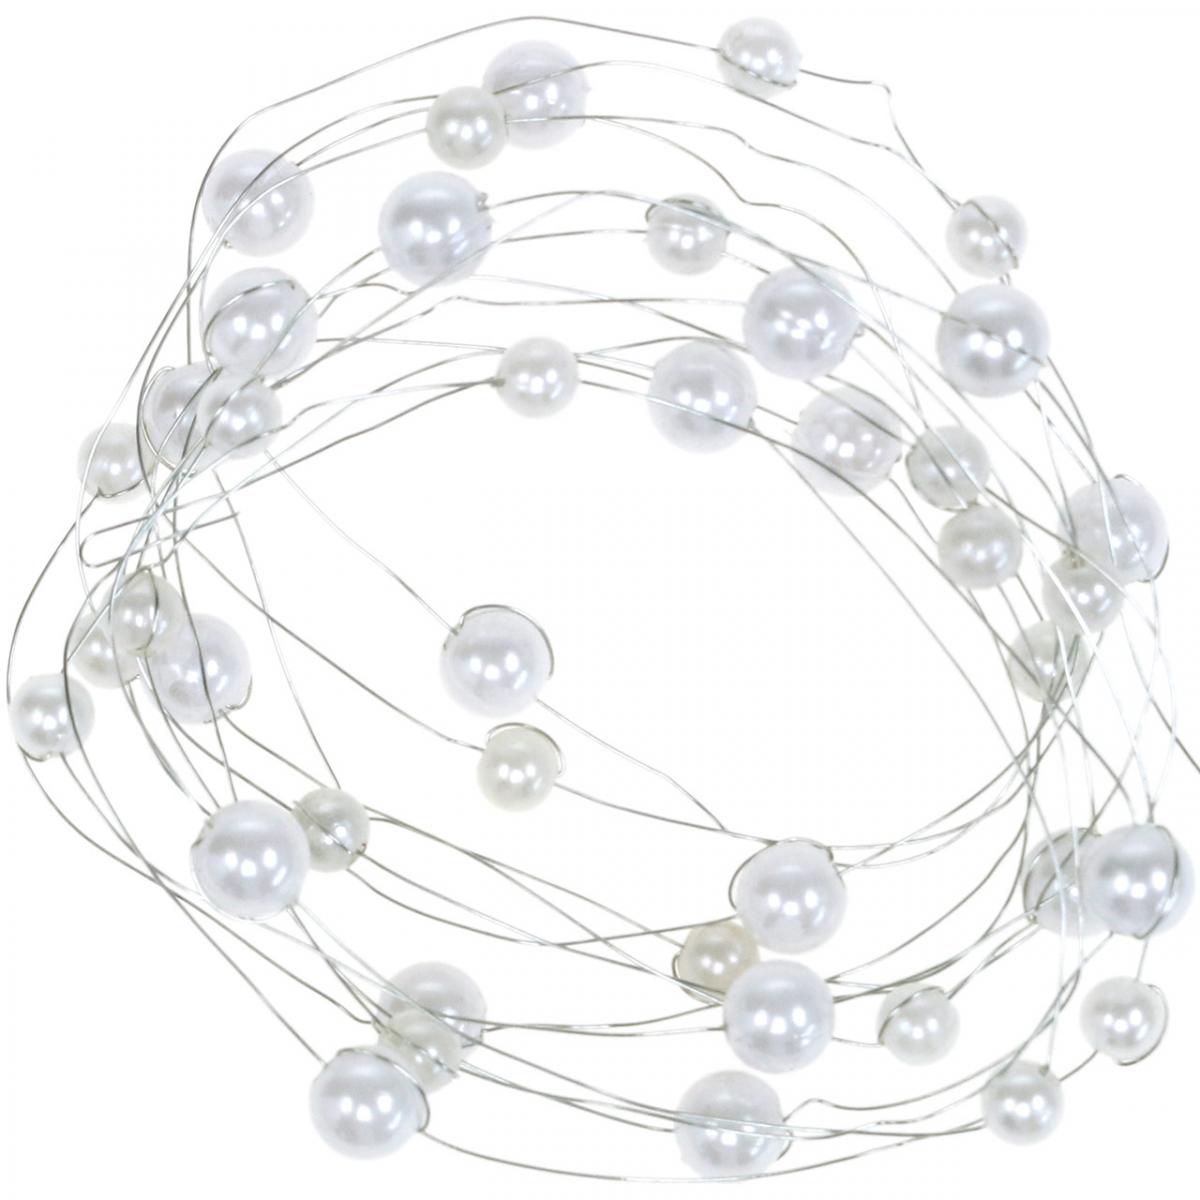 Bianca 3mm HEEPDD 60m / Roll Perline Filo di Perle 8mm Perle Artificiali Corde Perline Catena Perla Ghirlanda Rotolo per Decorazione della Festa Nuziale Fai da Te 